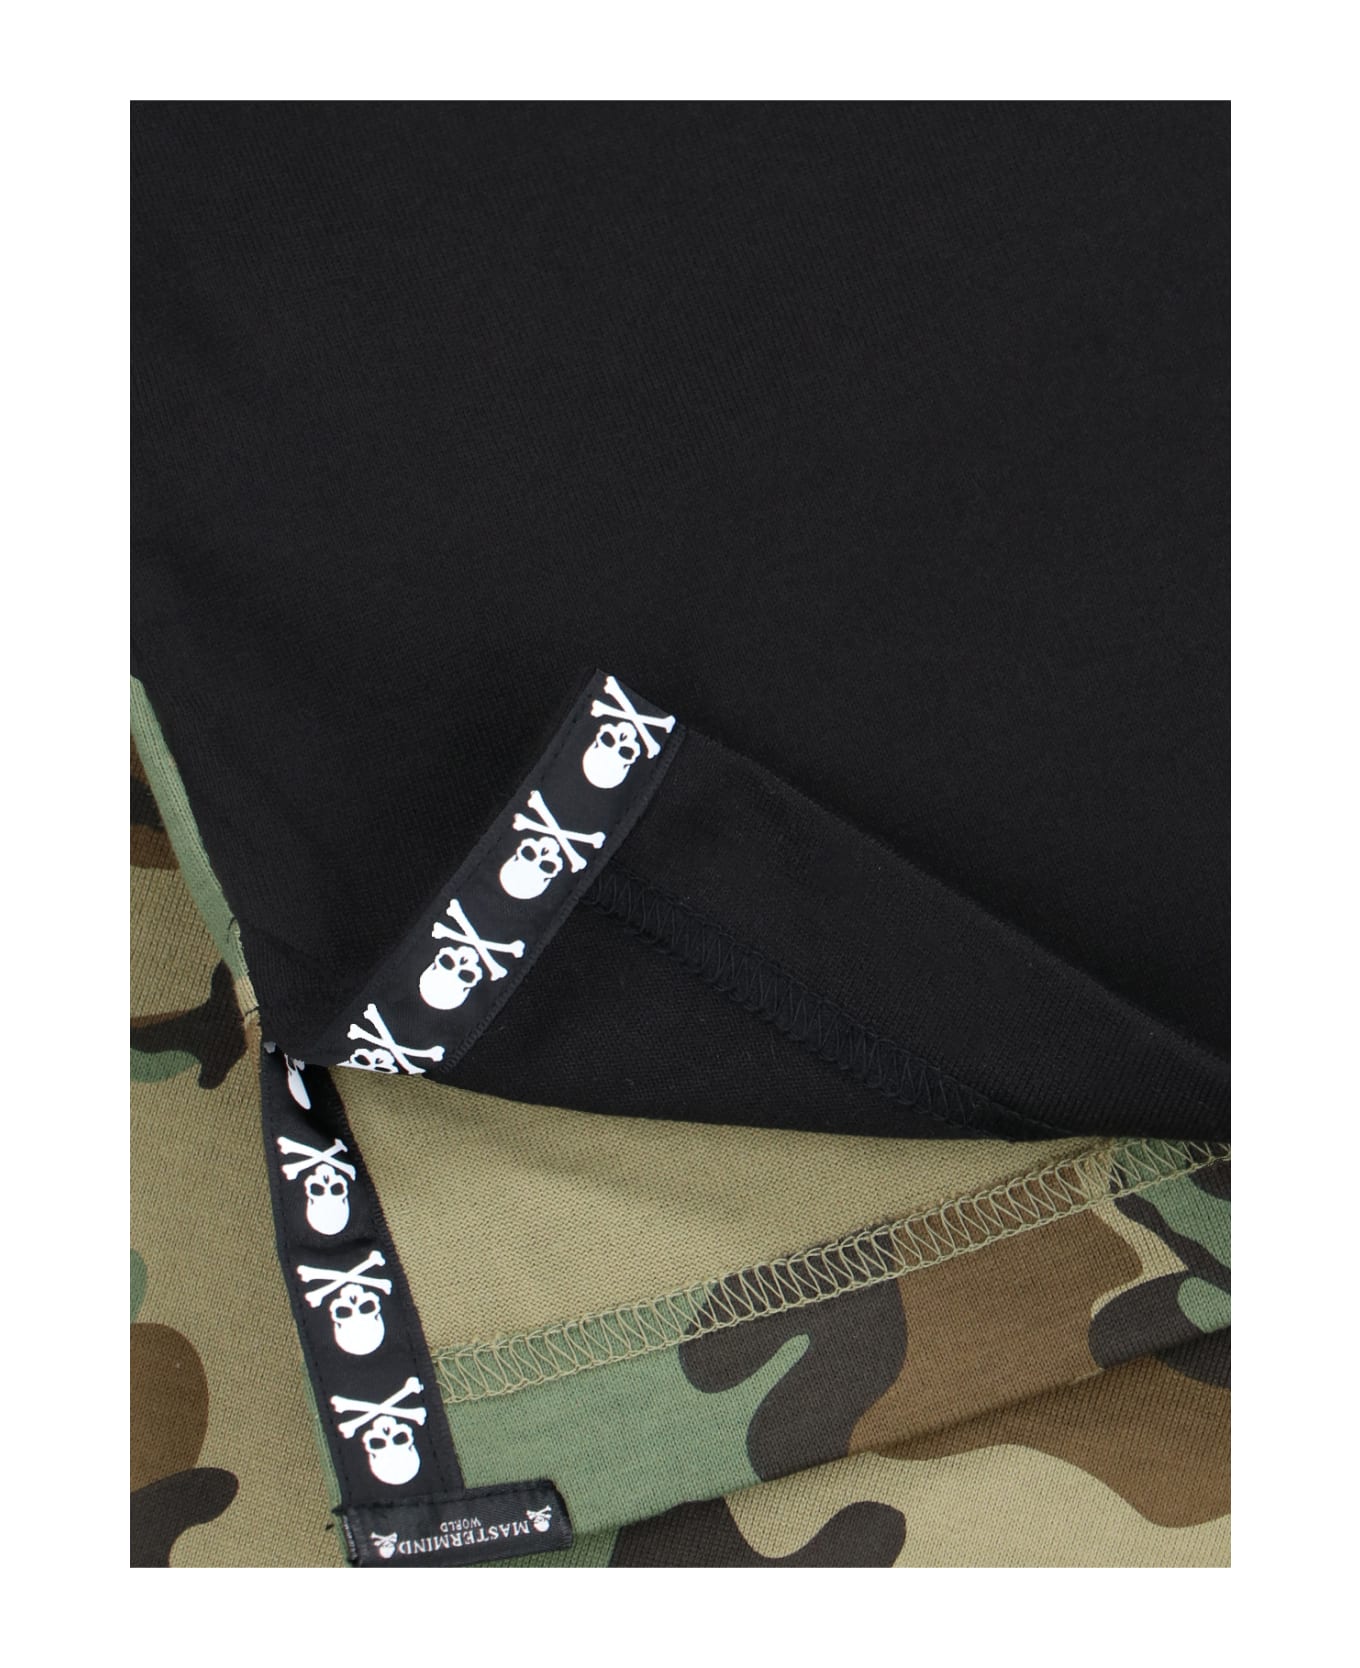 MASTERMIND WORLD Back Camouflage T-shirt - Black   シャツ